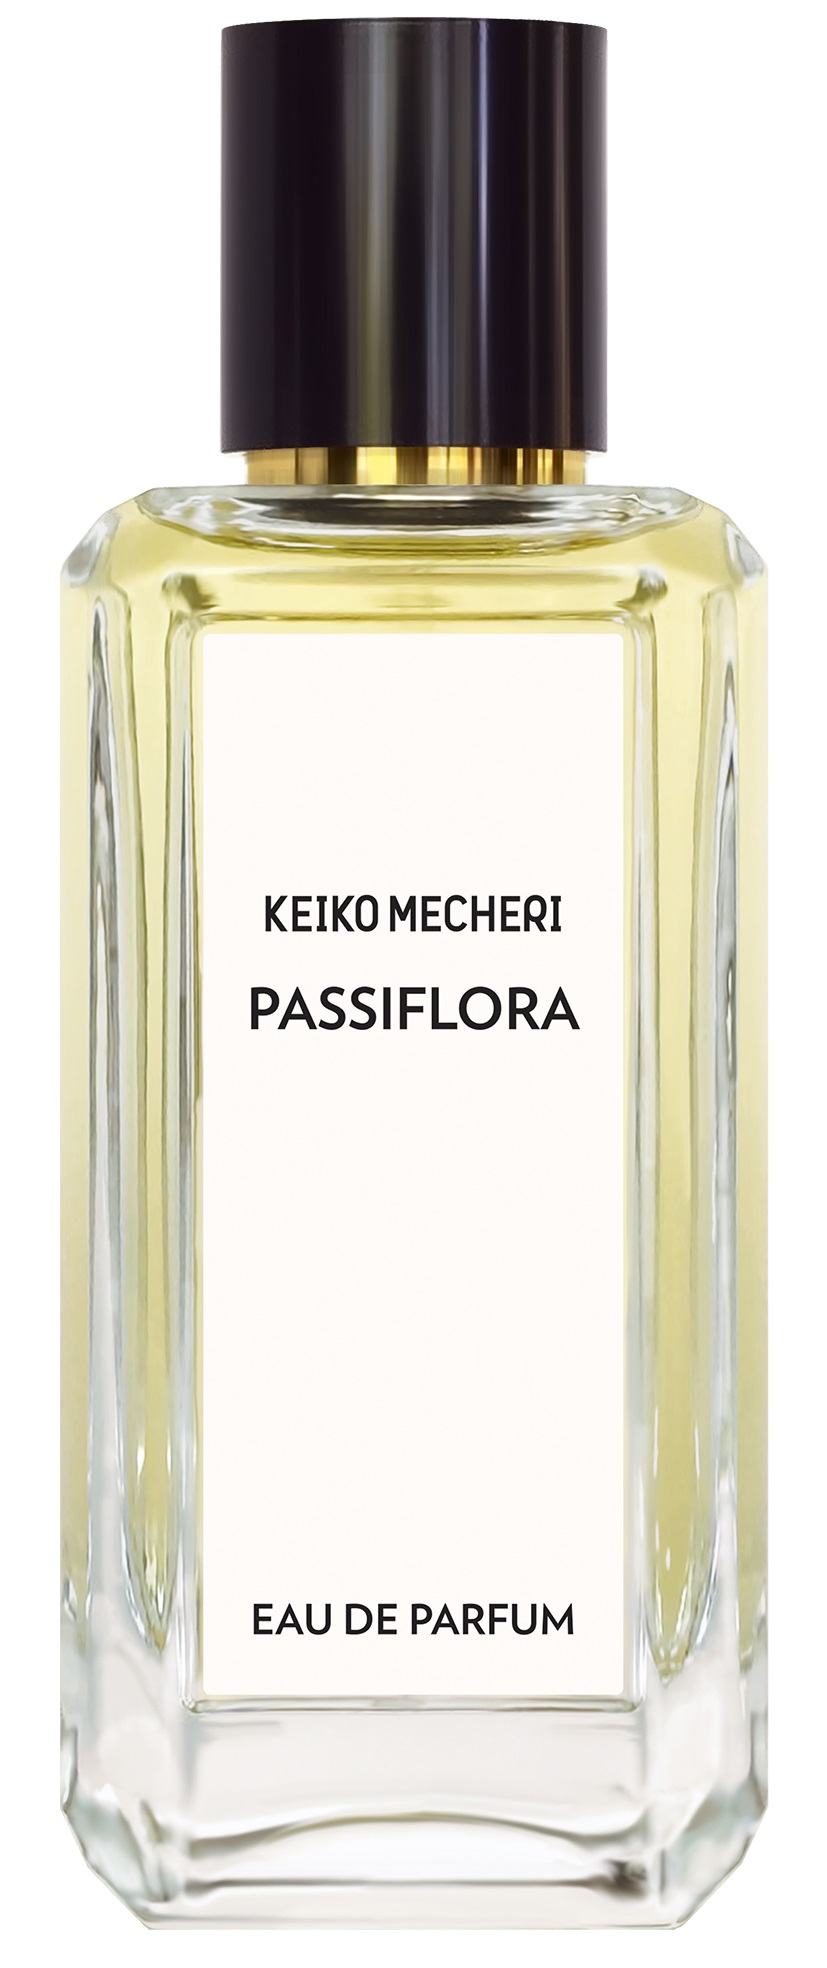 Keiko Mecheri Passiflora edp 100 ml.